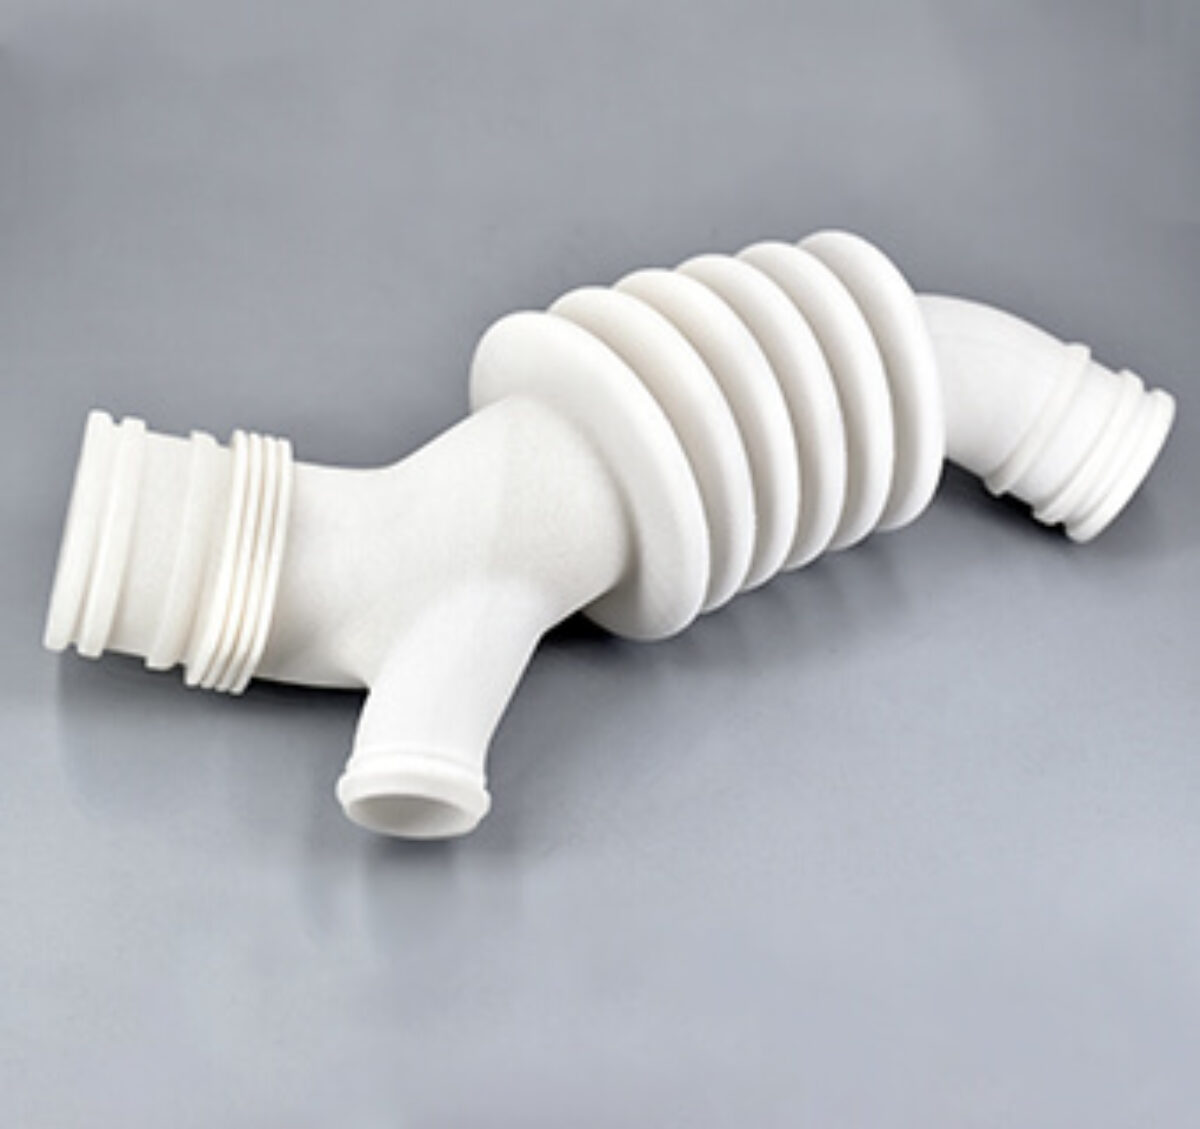 ▷ Plaques flexibles pour imprimantes 3D - 192x120mm 